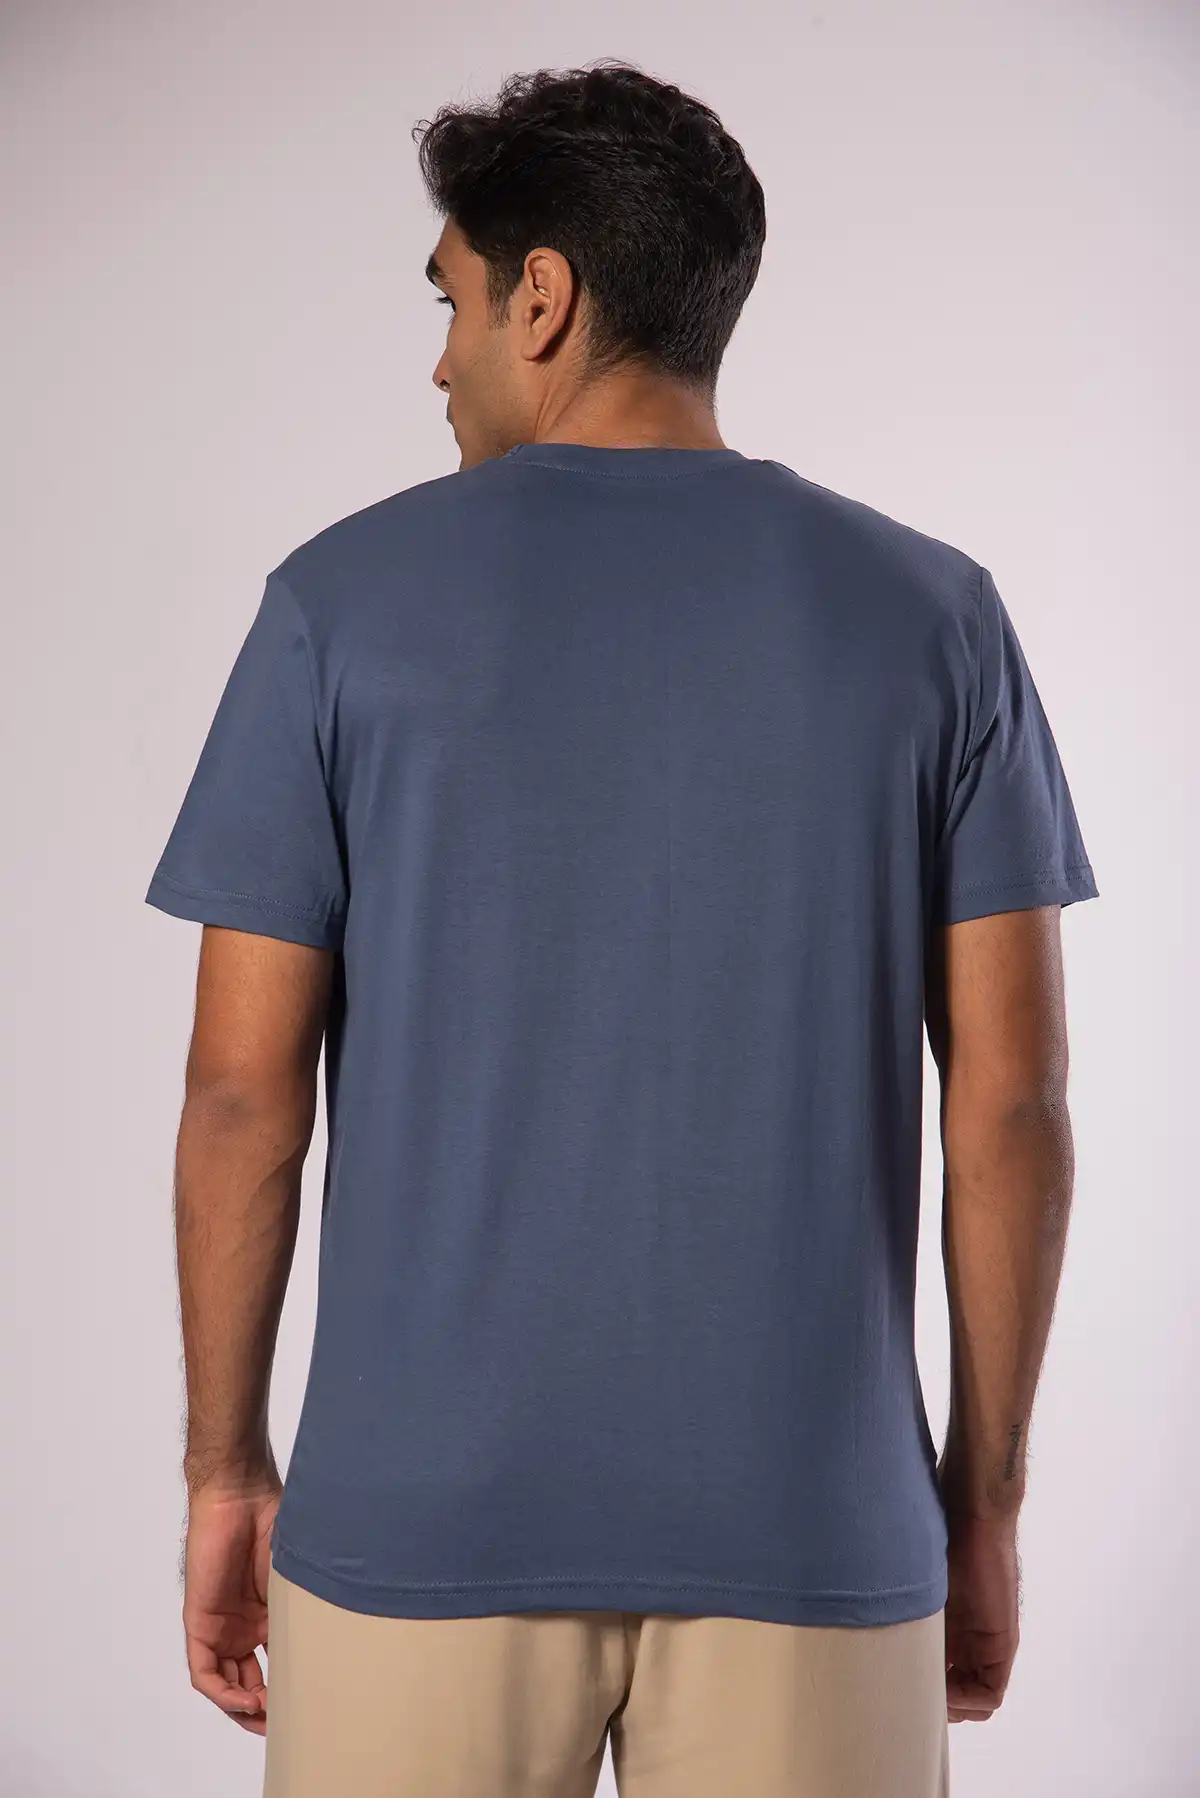 Unisex Crew Neck Cotton T-Shirt - Guilt Blue